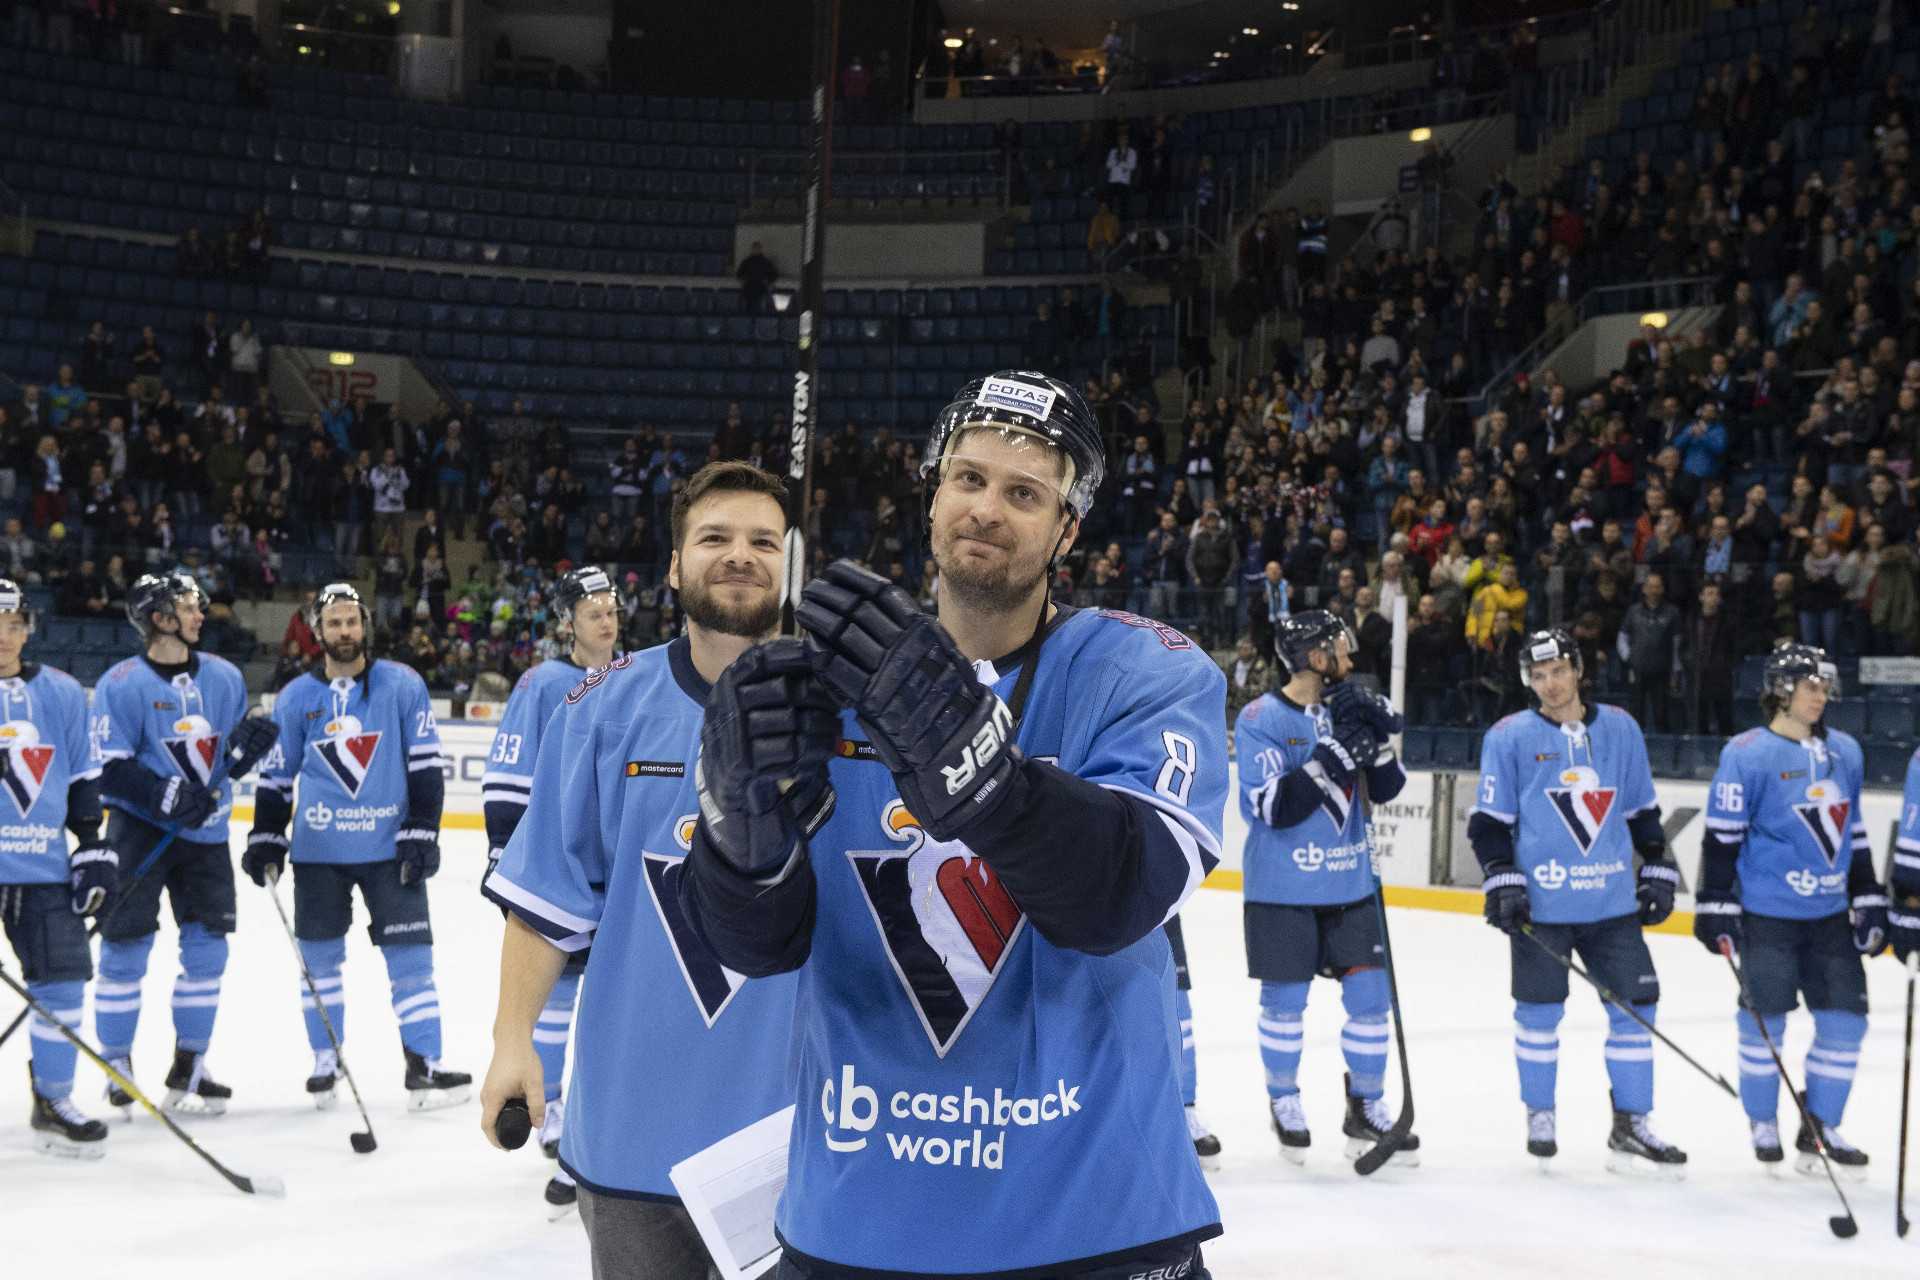 Hokejisti Slovana (na snímke kapitán Michal Sersen) sa rozlúčili s domácim publikom víťazstvom 3:2 nad Dinamom Minsk. Či išlo aj o posledný duel v KHL, sa fanúšikovia dozvedia v najbližších týždňoch.